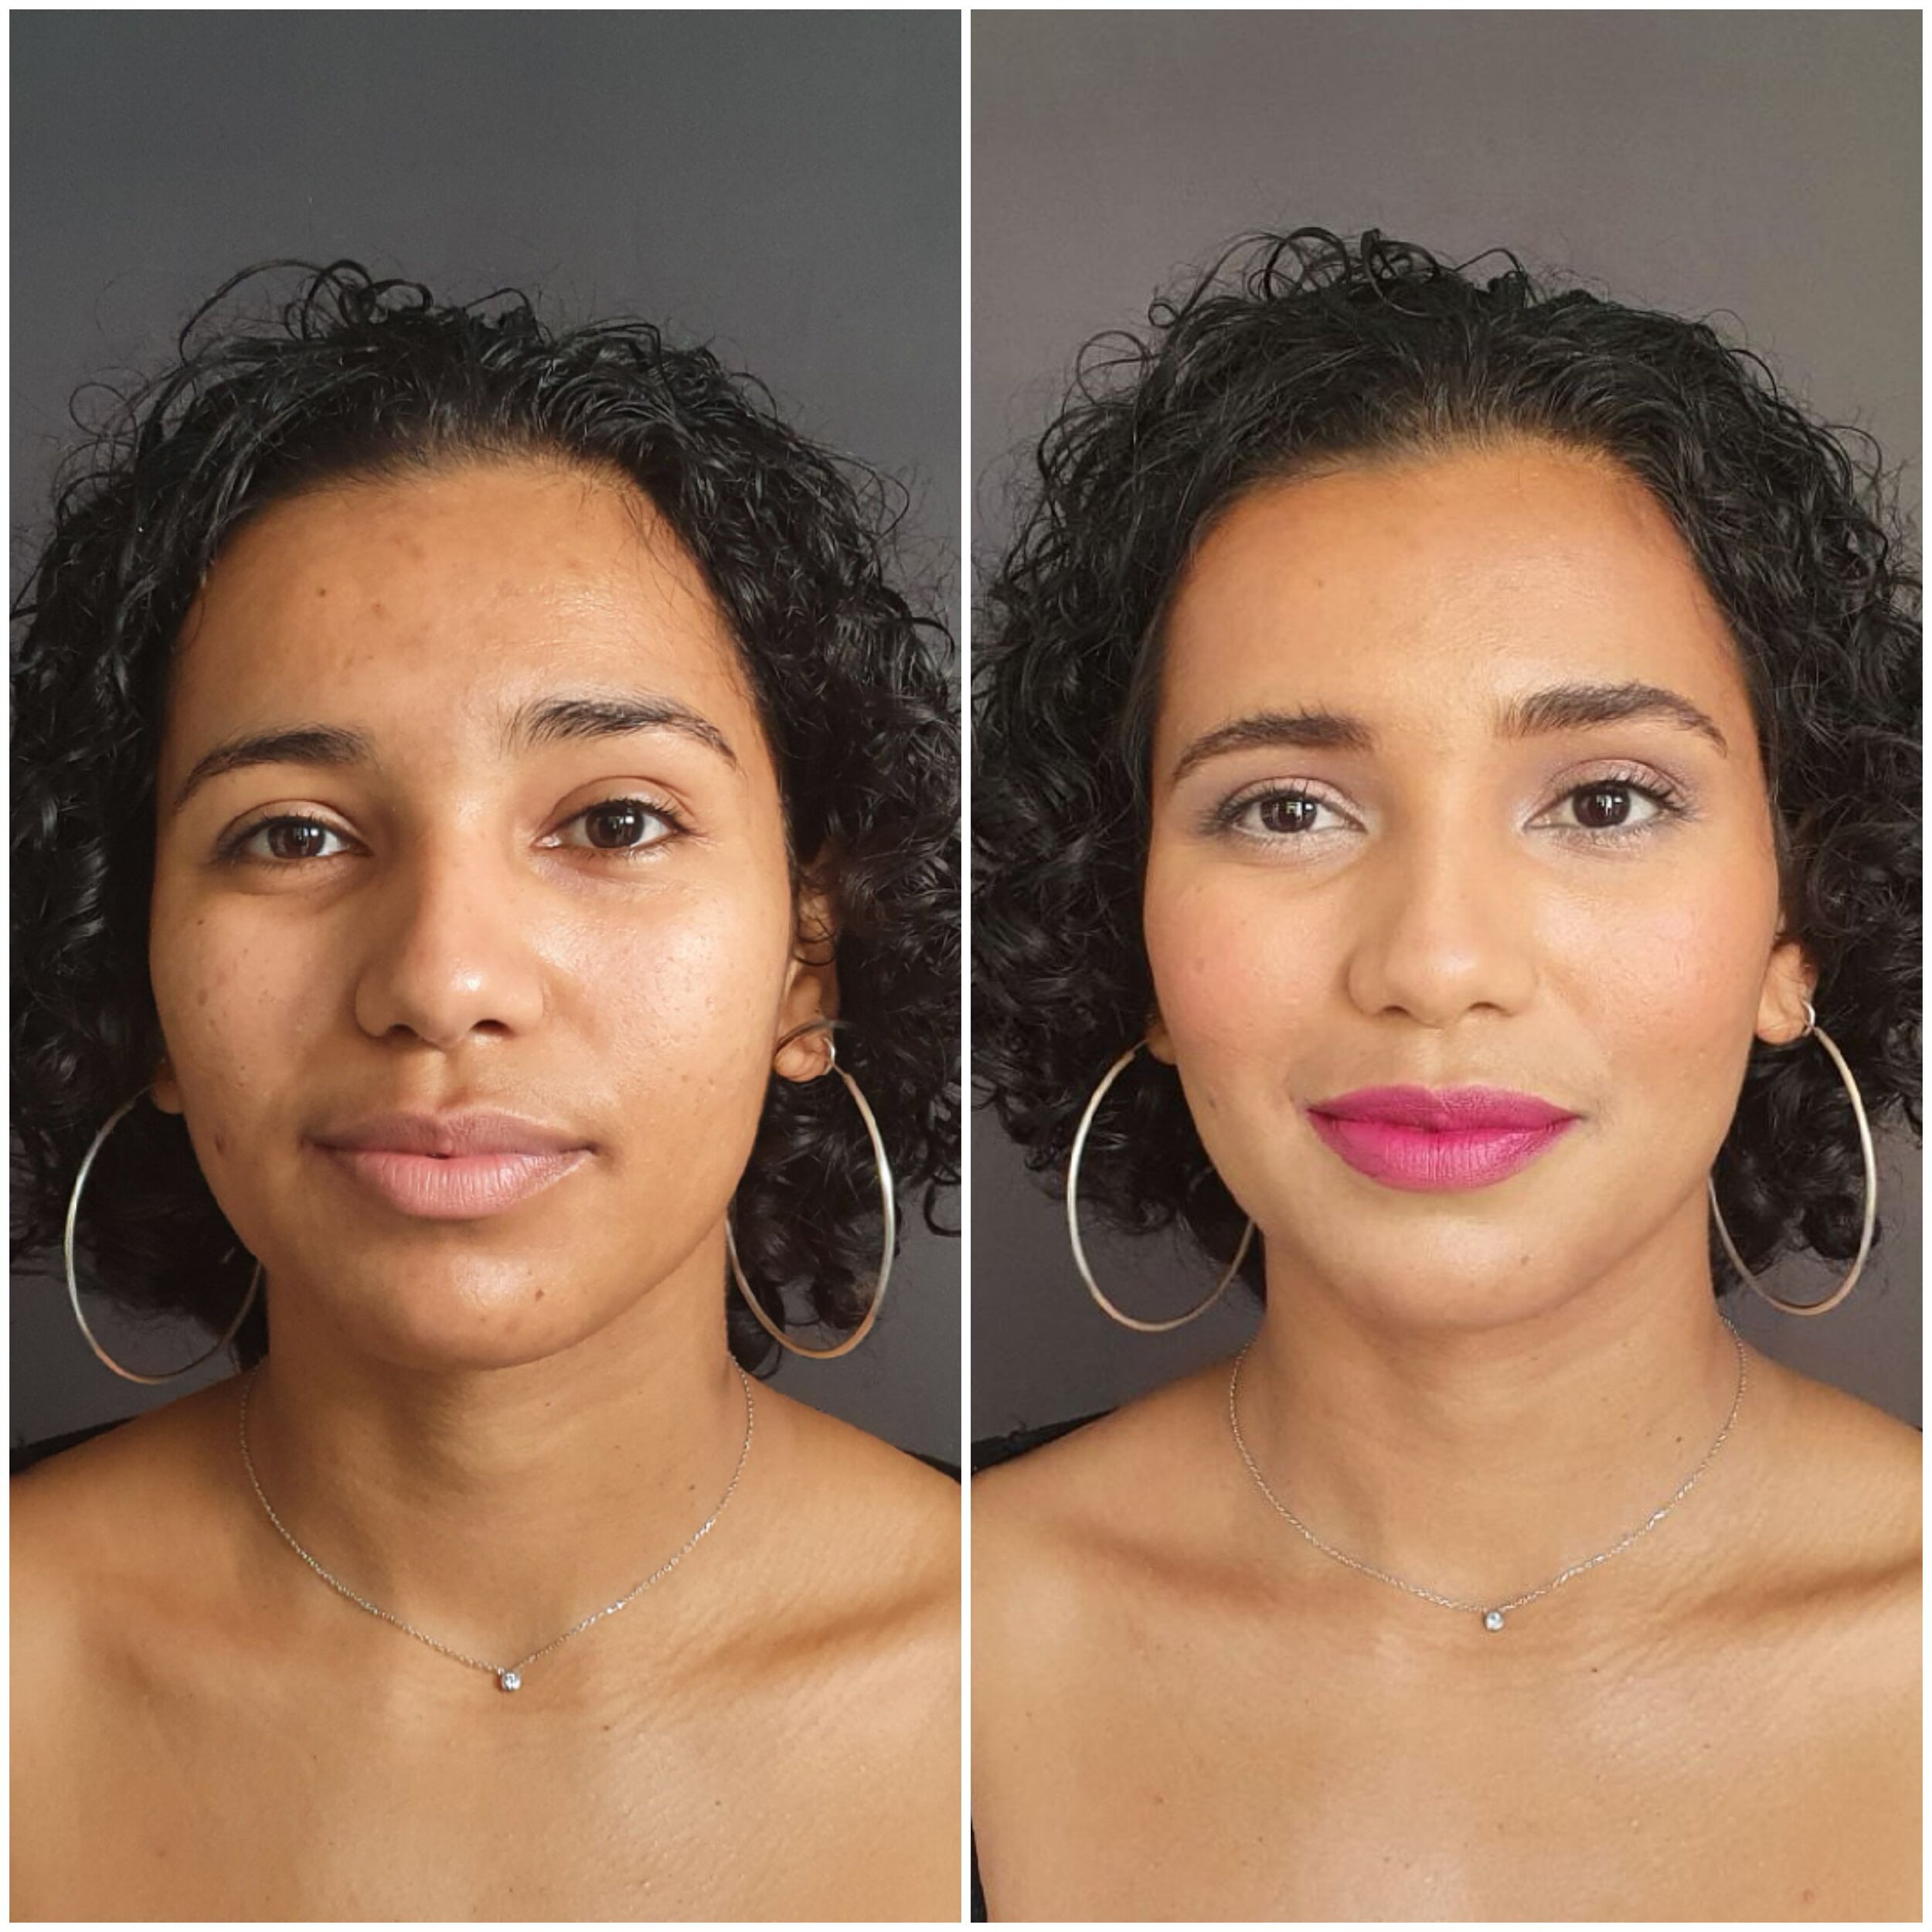 Adolescente Avant Et Après Appliquer Le Maquillage Image stock